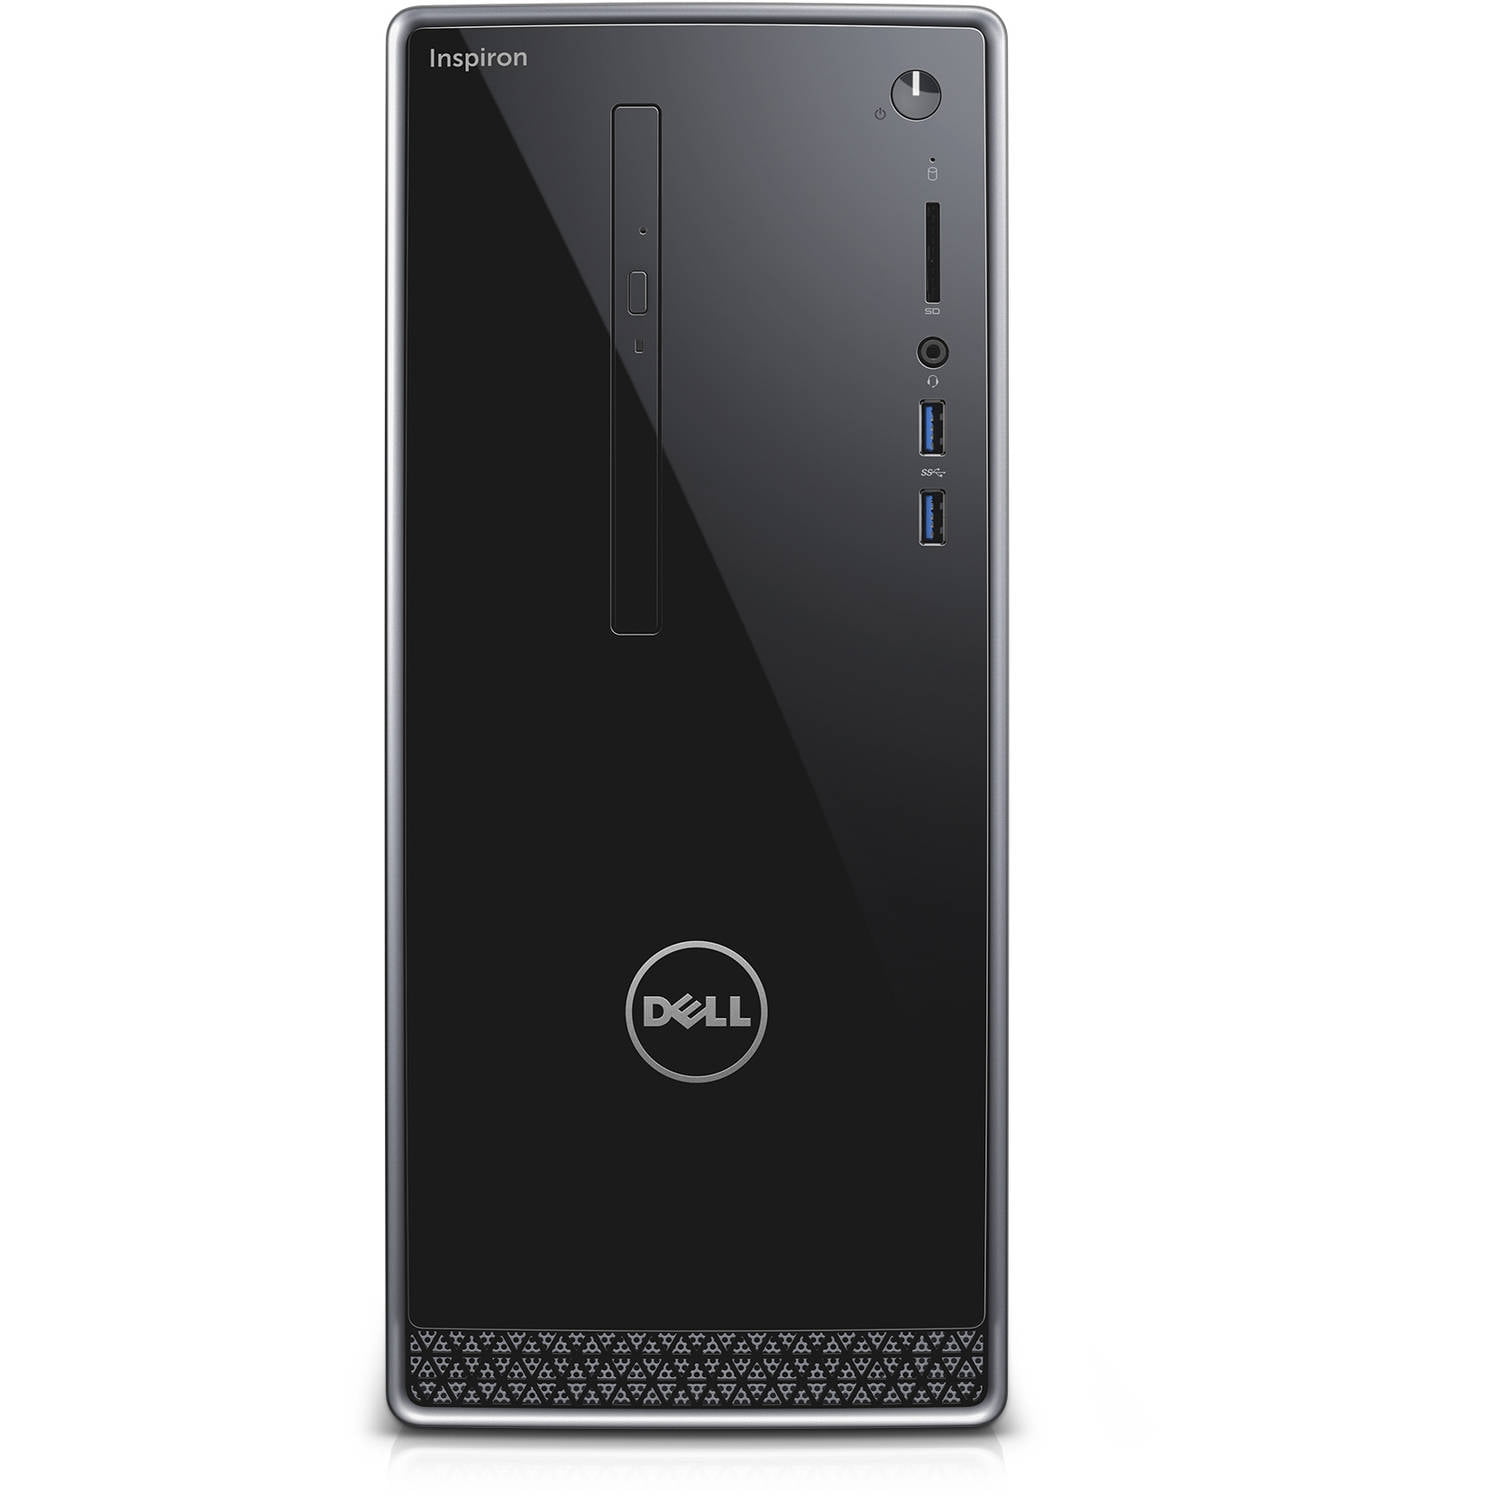 Dell Inspiron 3250 Intel Core i3-6100 X2 3.7GHz 4GB 1TB Win10,Black